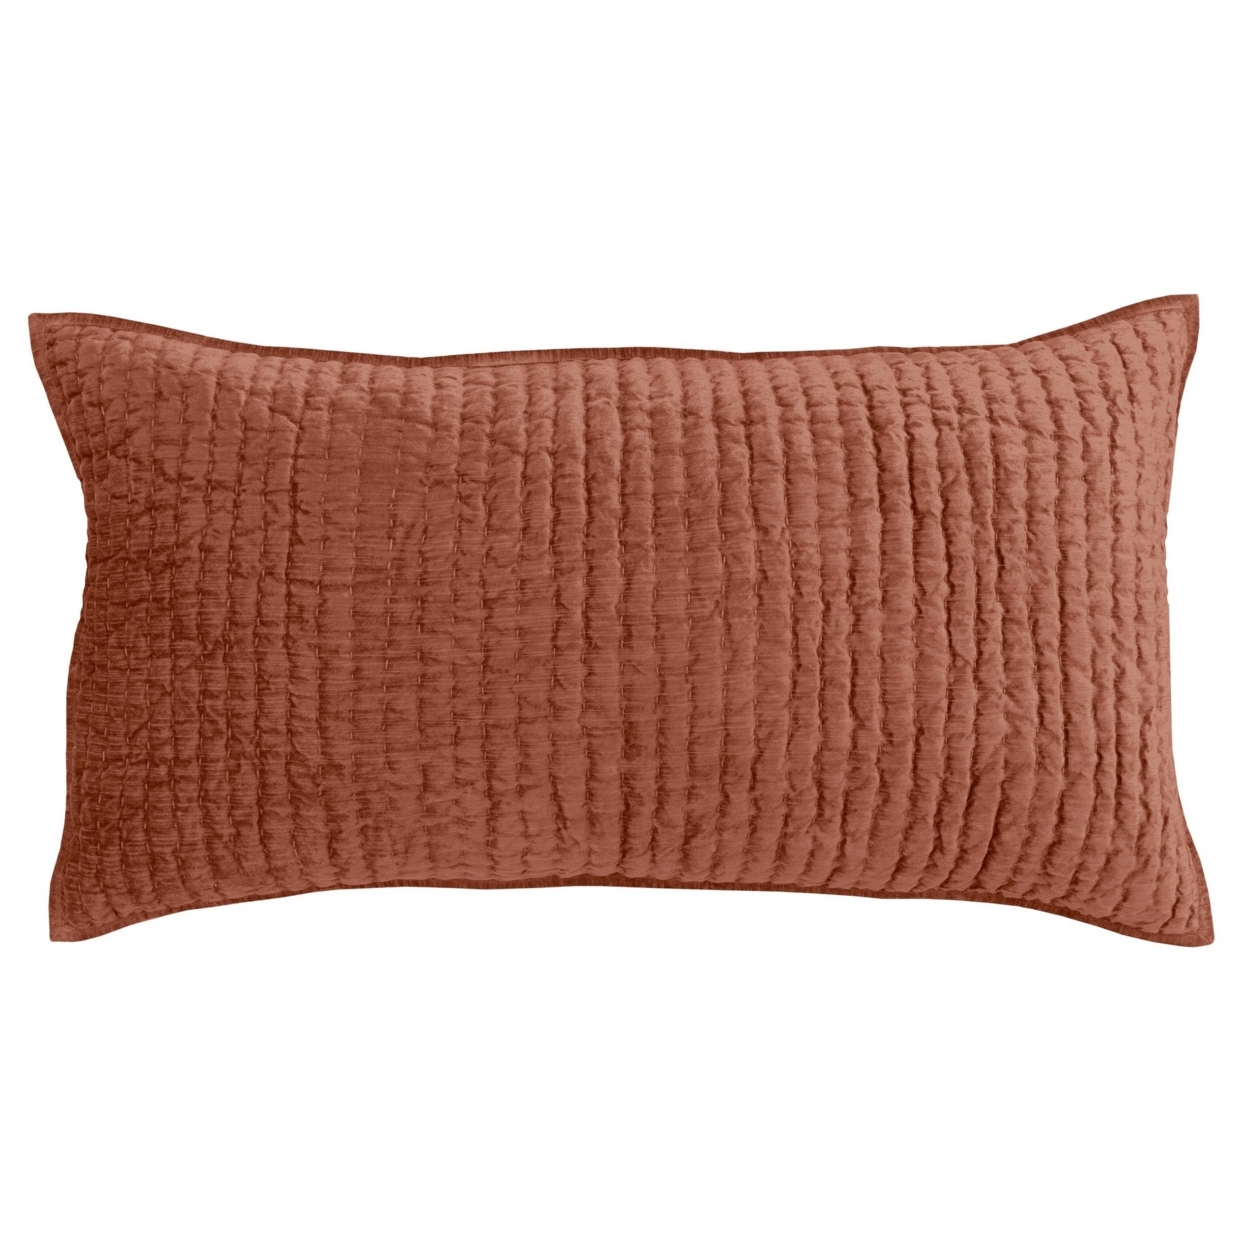 Bili 20 X 36 Stitched King Lumbar Pillow Sham, Orange Brown Rayon Velvet- Saltoro Sherpi